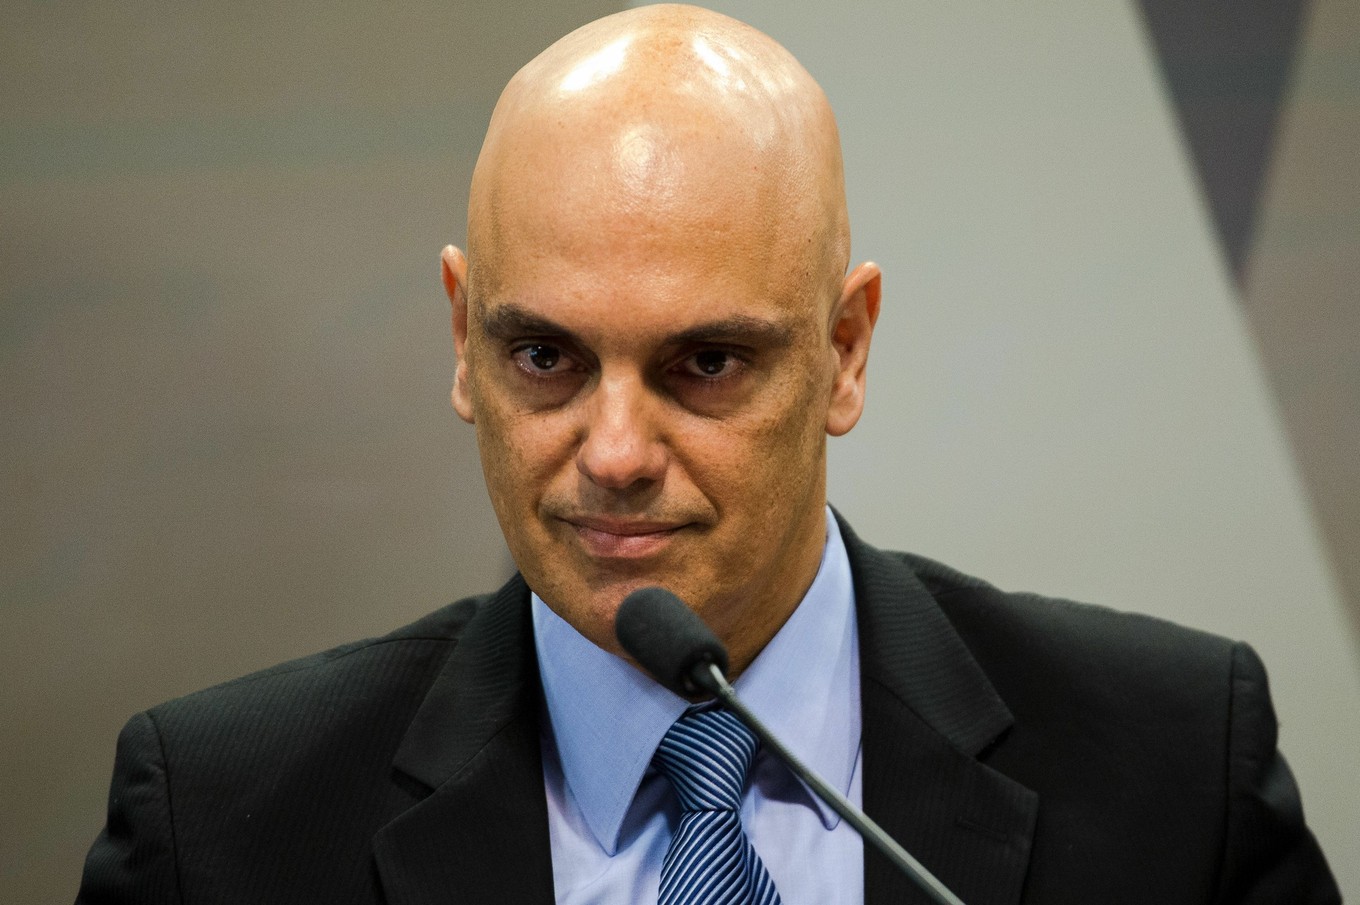 CCJ do Senado aprova Alexandre de Moraes para STF; plenário vota nesta quarta